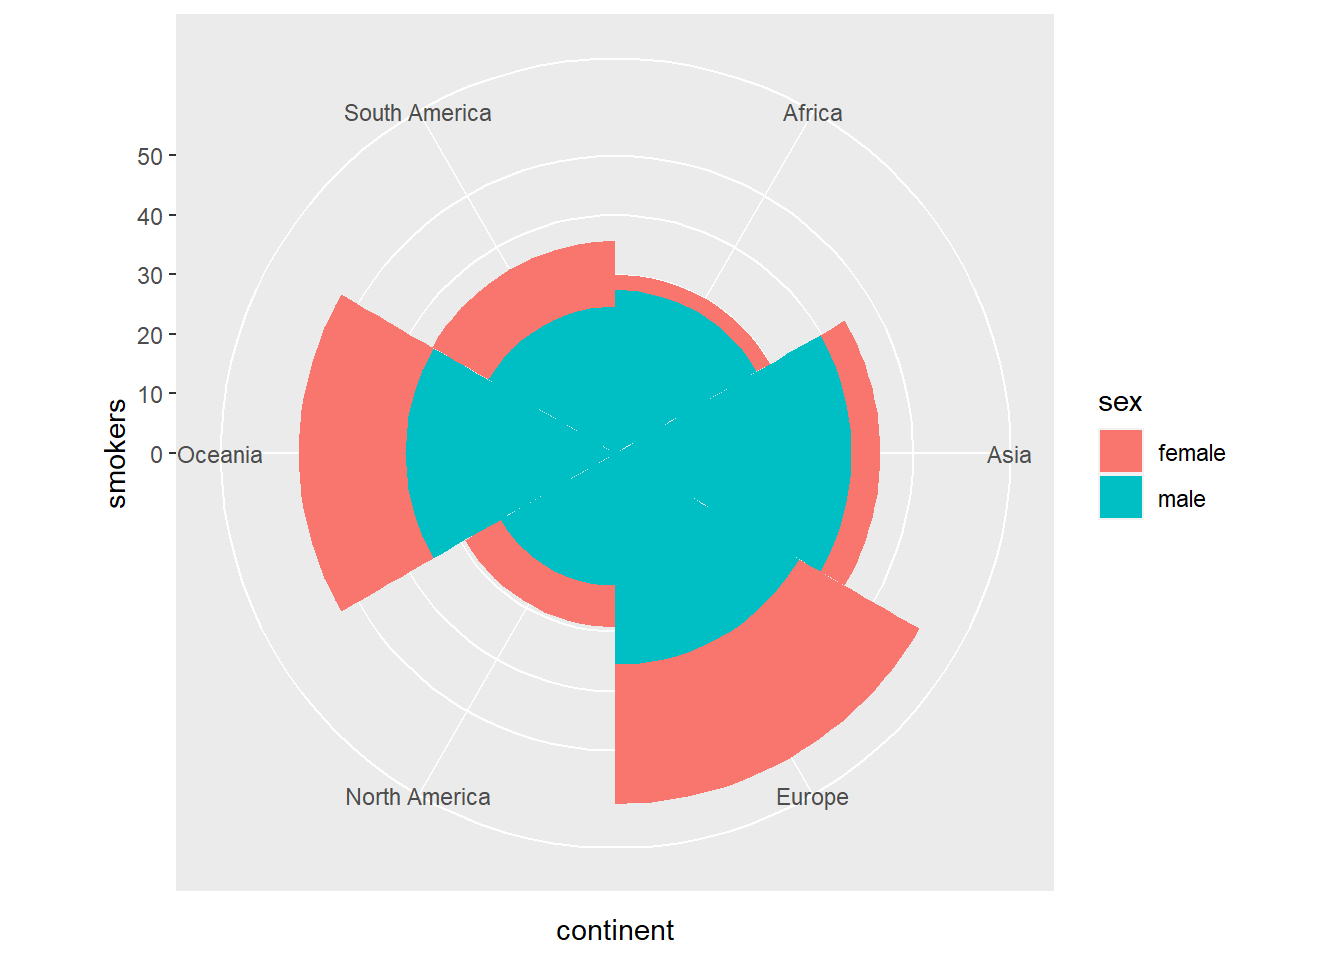 Diagrama de barras apilado transformado en sectores circulares usando `coord_polar`